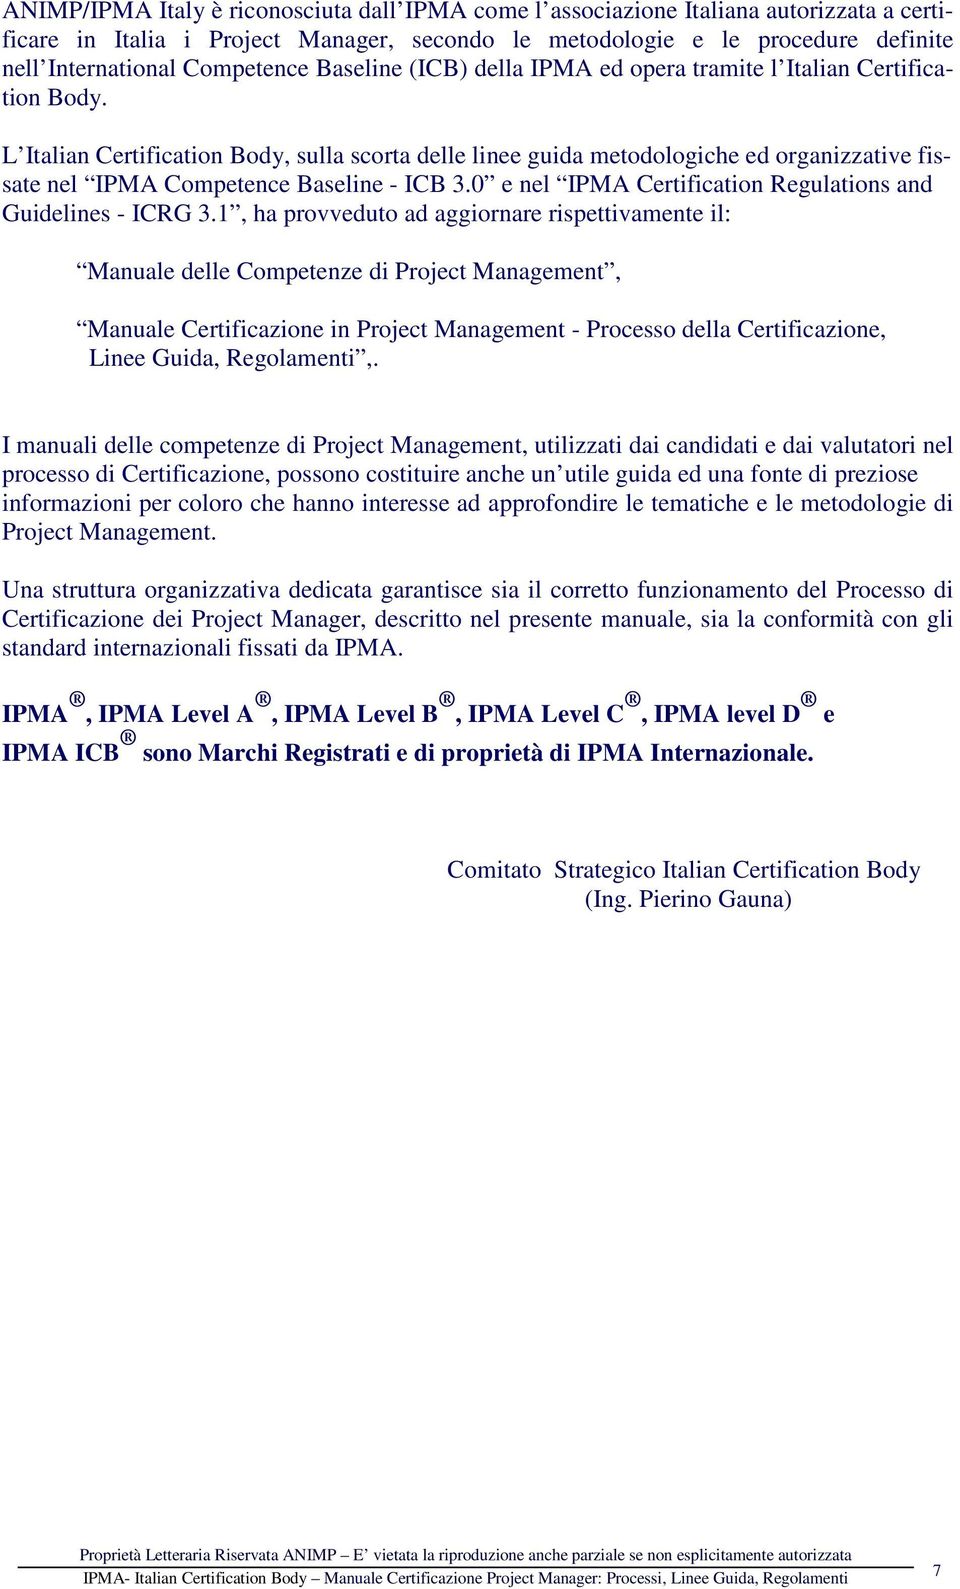 L Italian Certification Body, sulla scorta delle linee guida metodologiche ed organizzative fissate nel IPMA Competence Baseline - ICB 3.0 e nel IPMA Certification Regulations and Guidelines - ICRG 3.